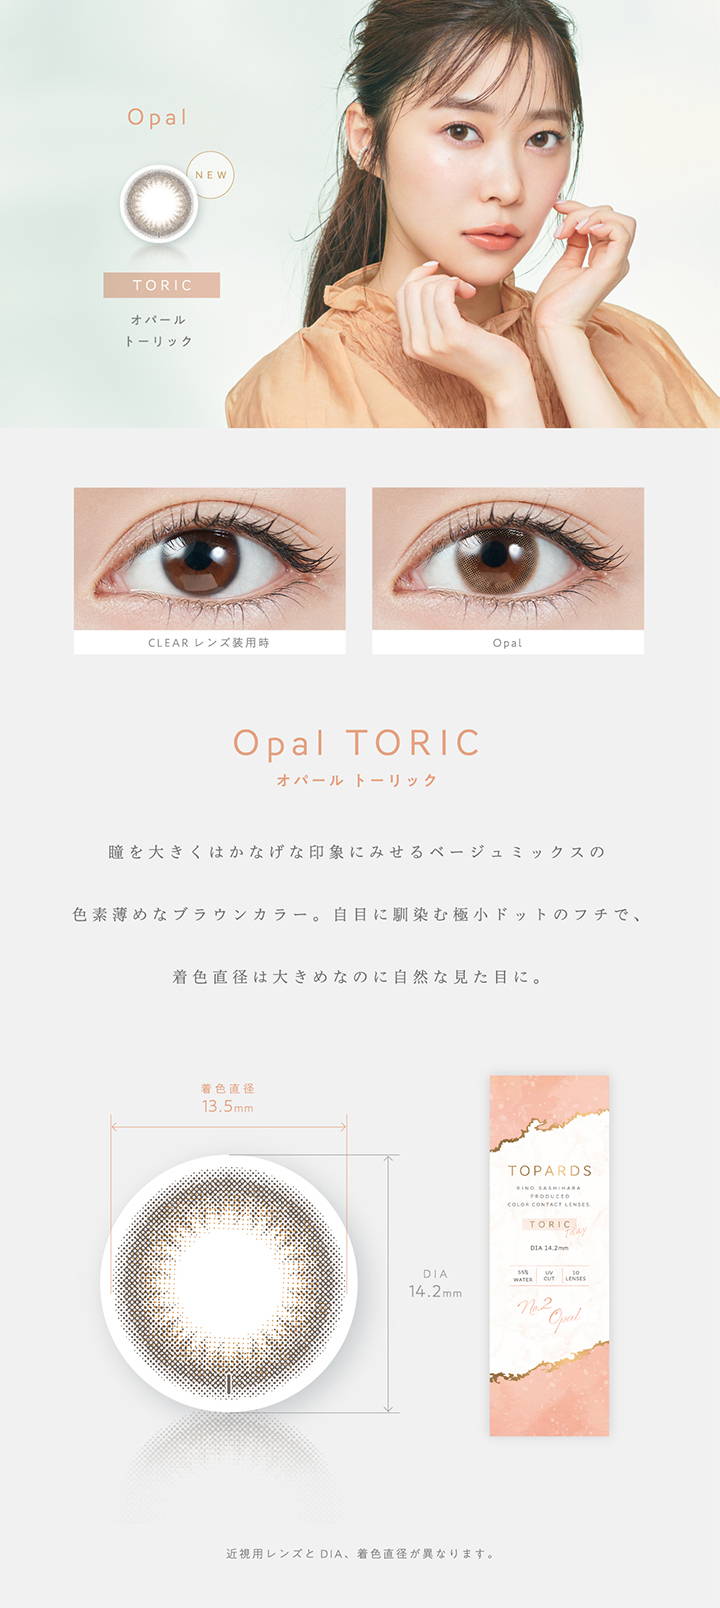 【乱視用:乱視度数:-0.75D】 Opal TORIC(オパールトーリック),新色,瞳を大きくはかなげな印象にみせるベージュミックスの色素薄めなブラウンカラー。自目になじむ極小ドットのフチで、直色直径は大きめなのに自然な見た目に。,着色直径13.5mm,DIA14.2mm|TOPARDS TORIC(トパーズトーリック)コンタクトレンズ